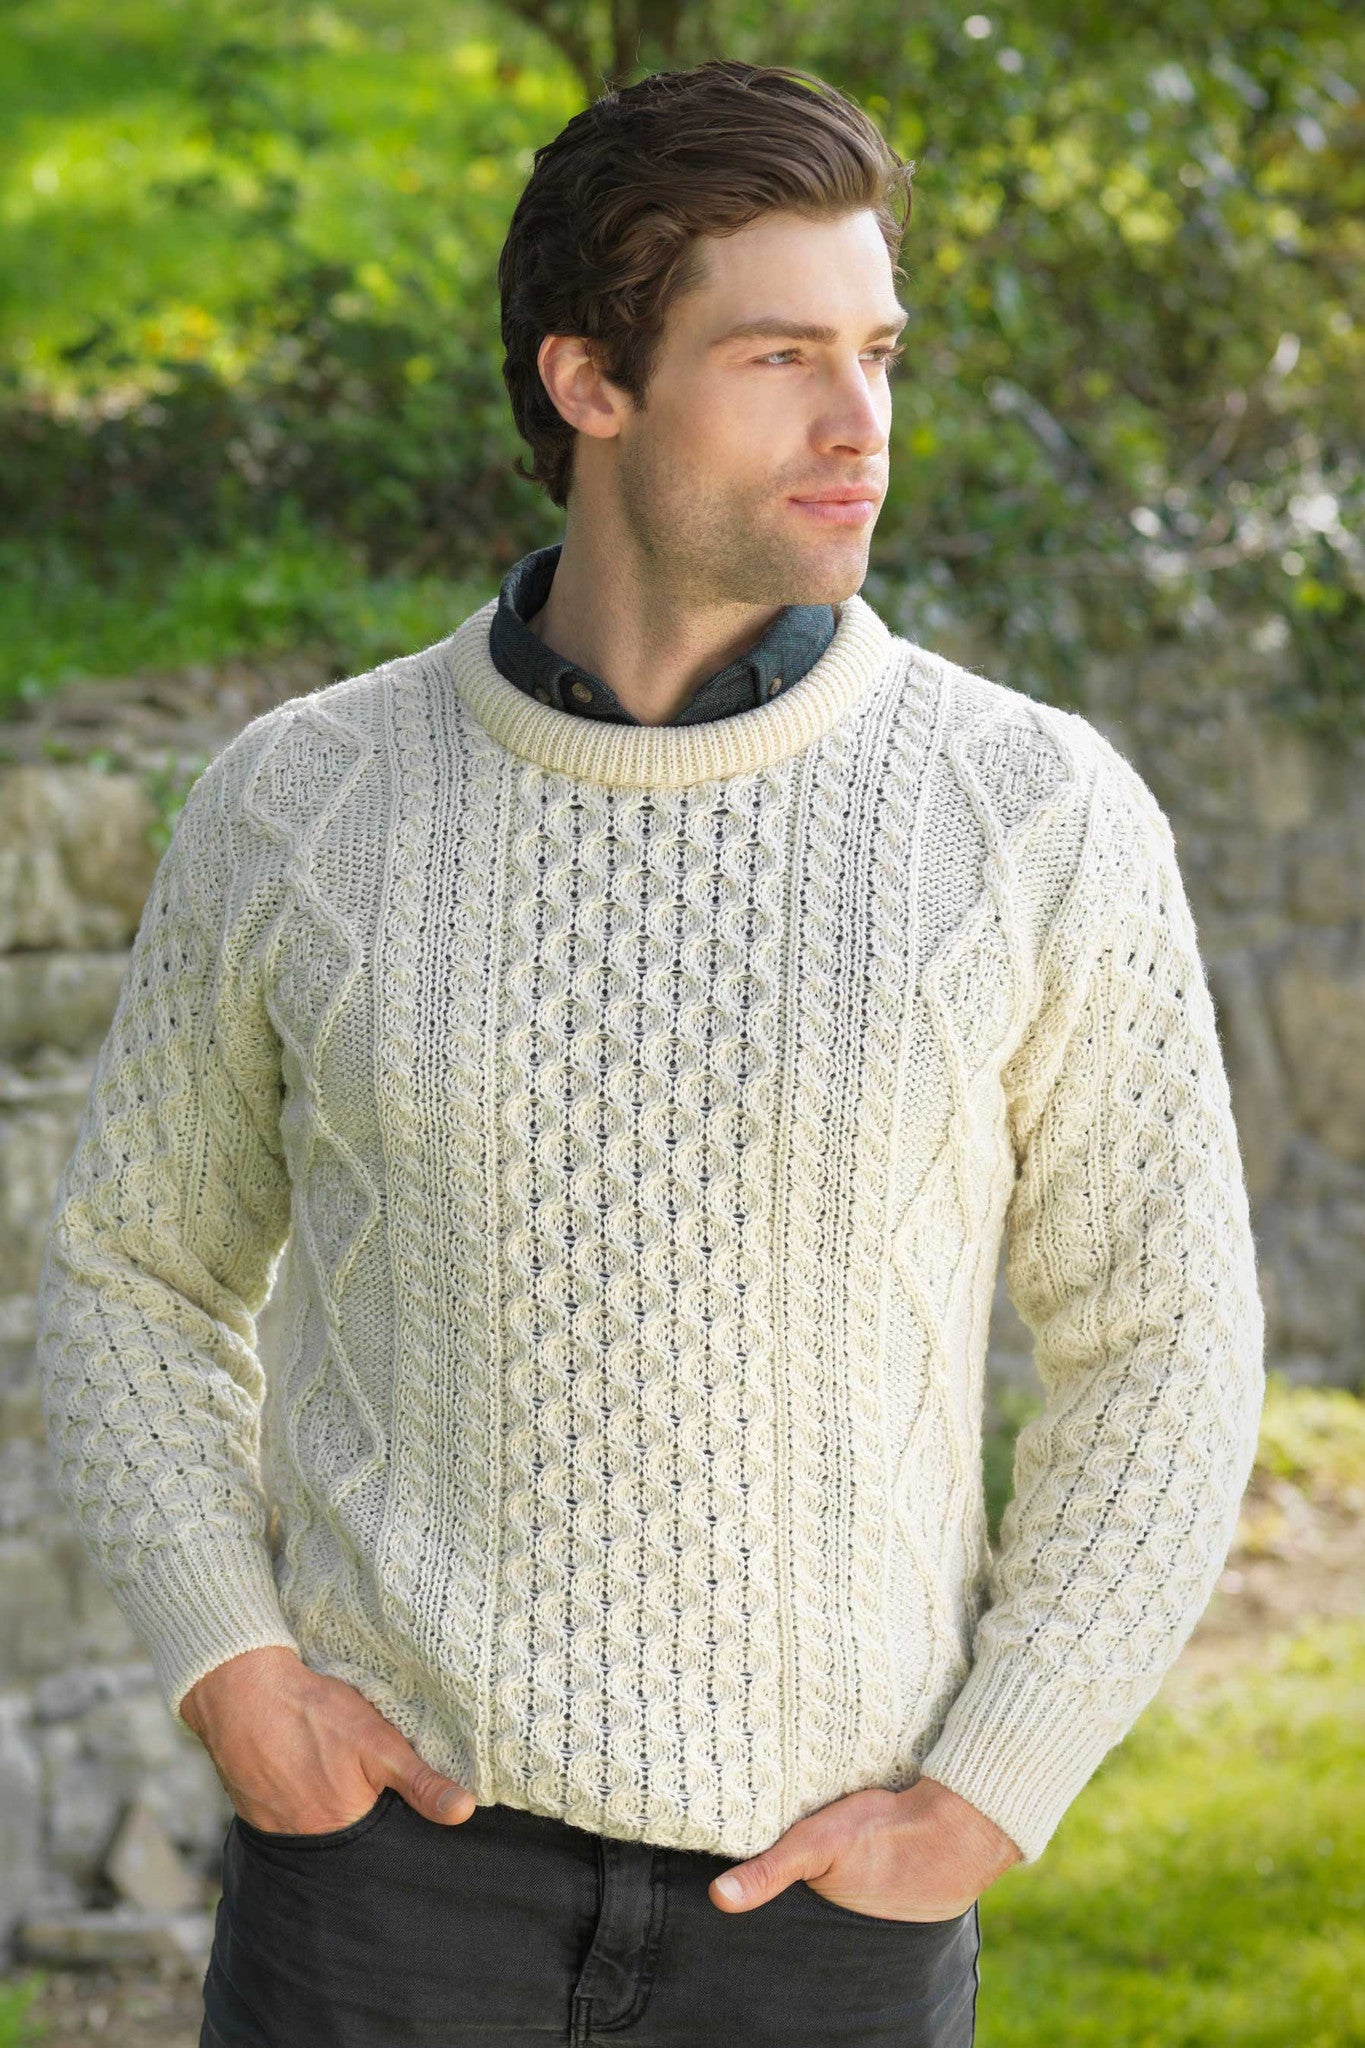 Мужской пуловер связанный на спицах